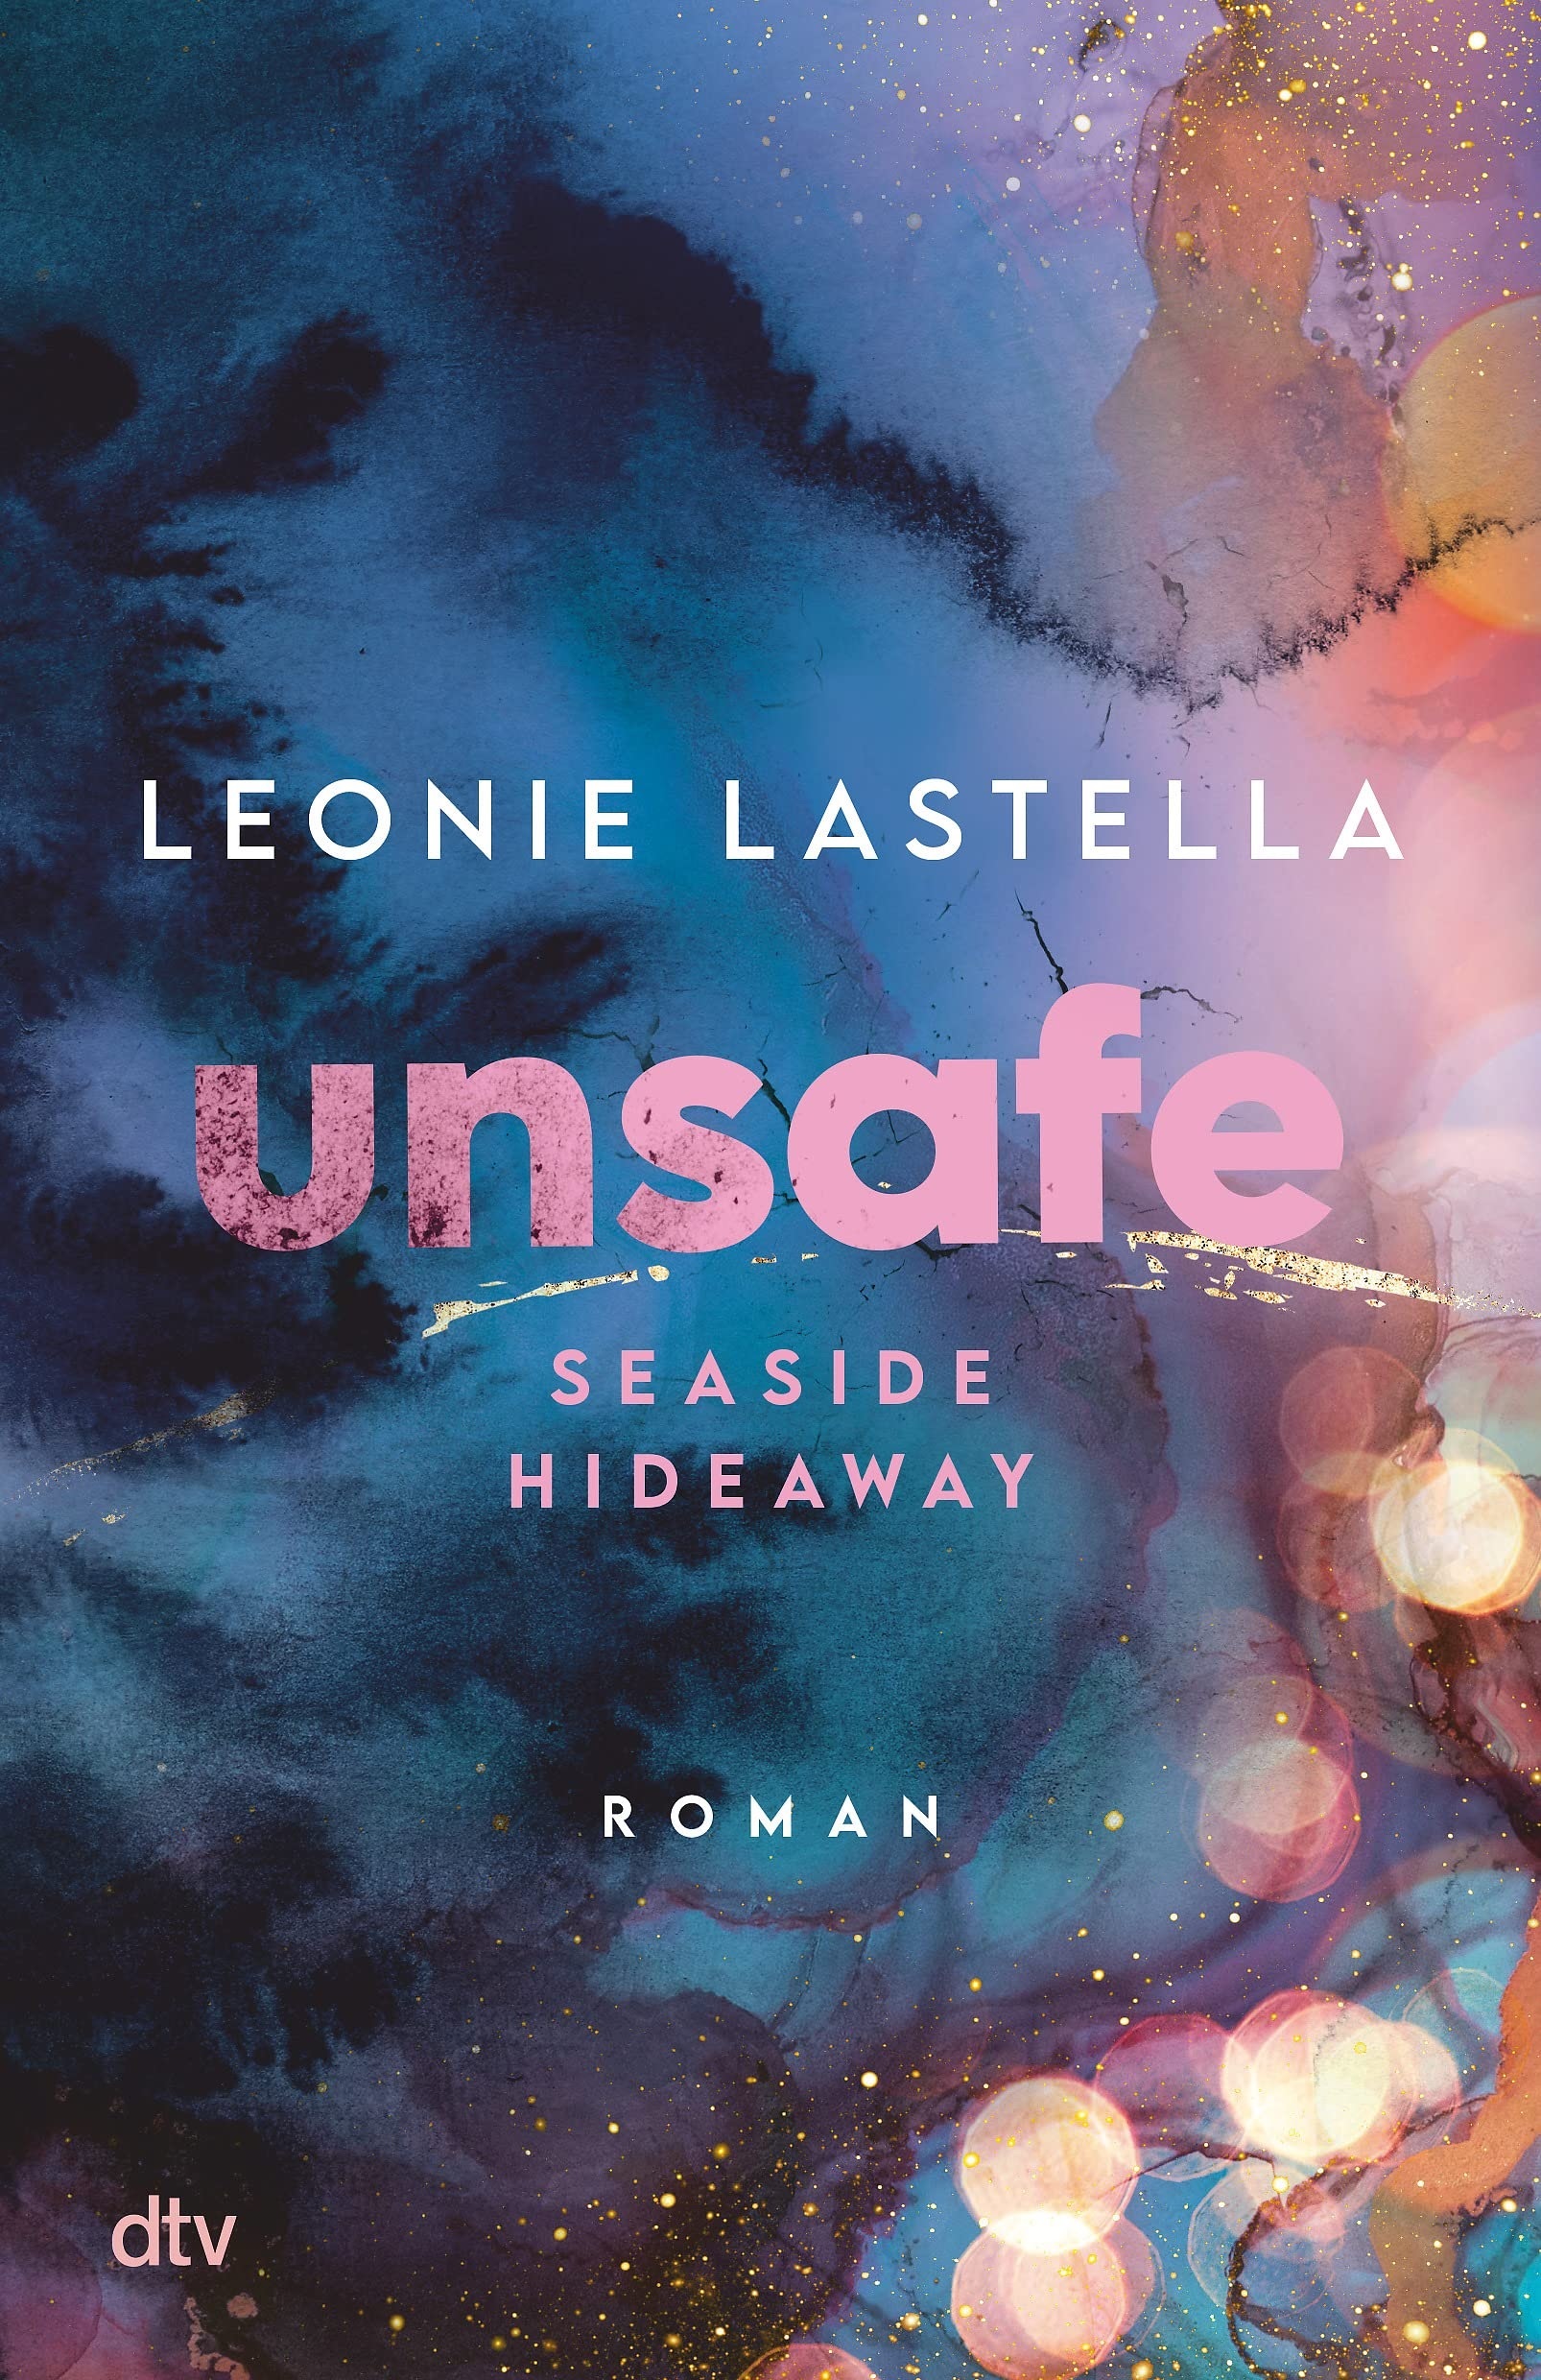 Lastella-unsafe-seaside-hideaway-1